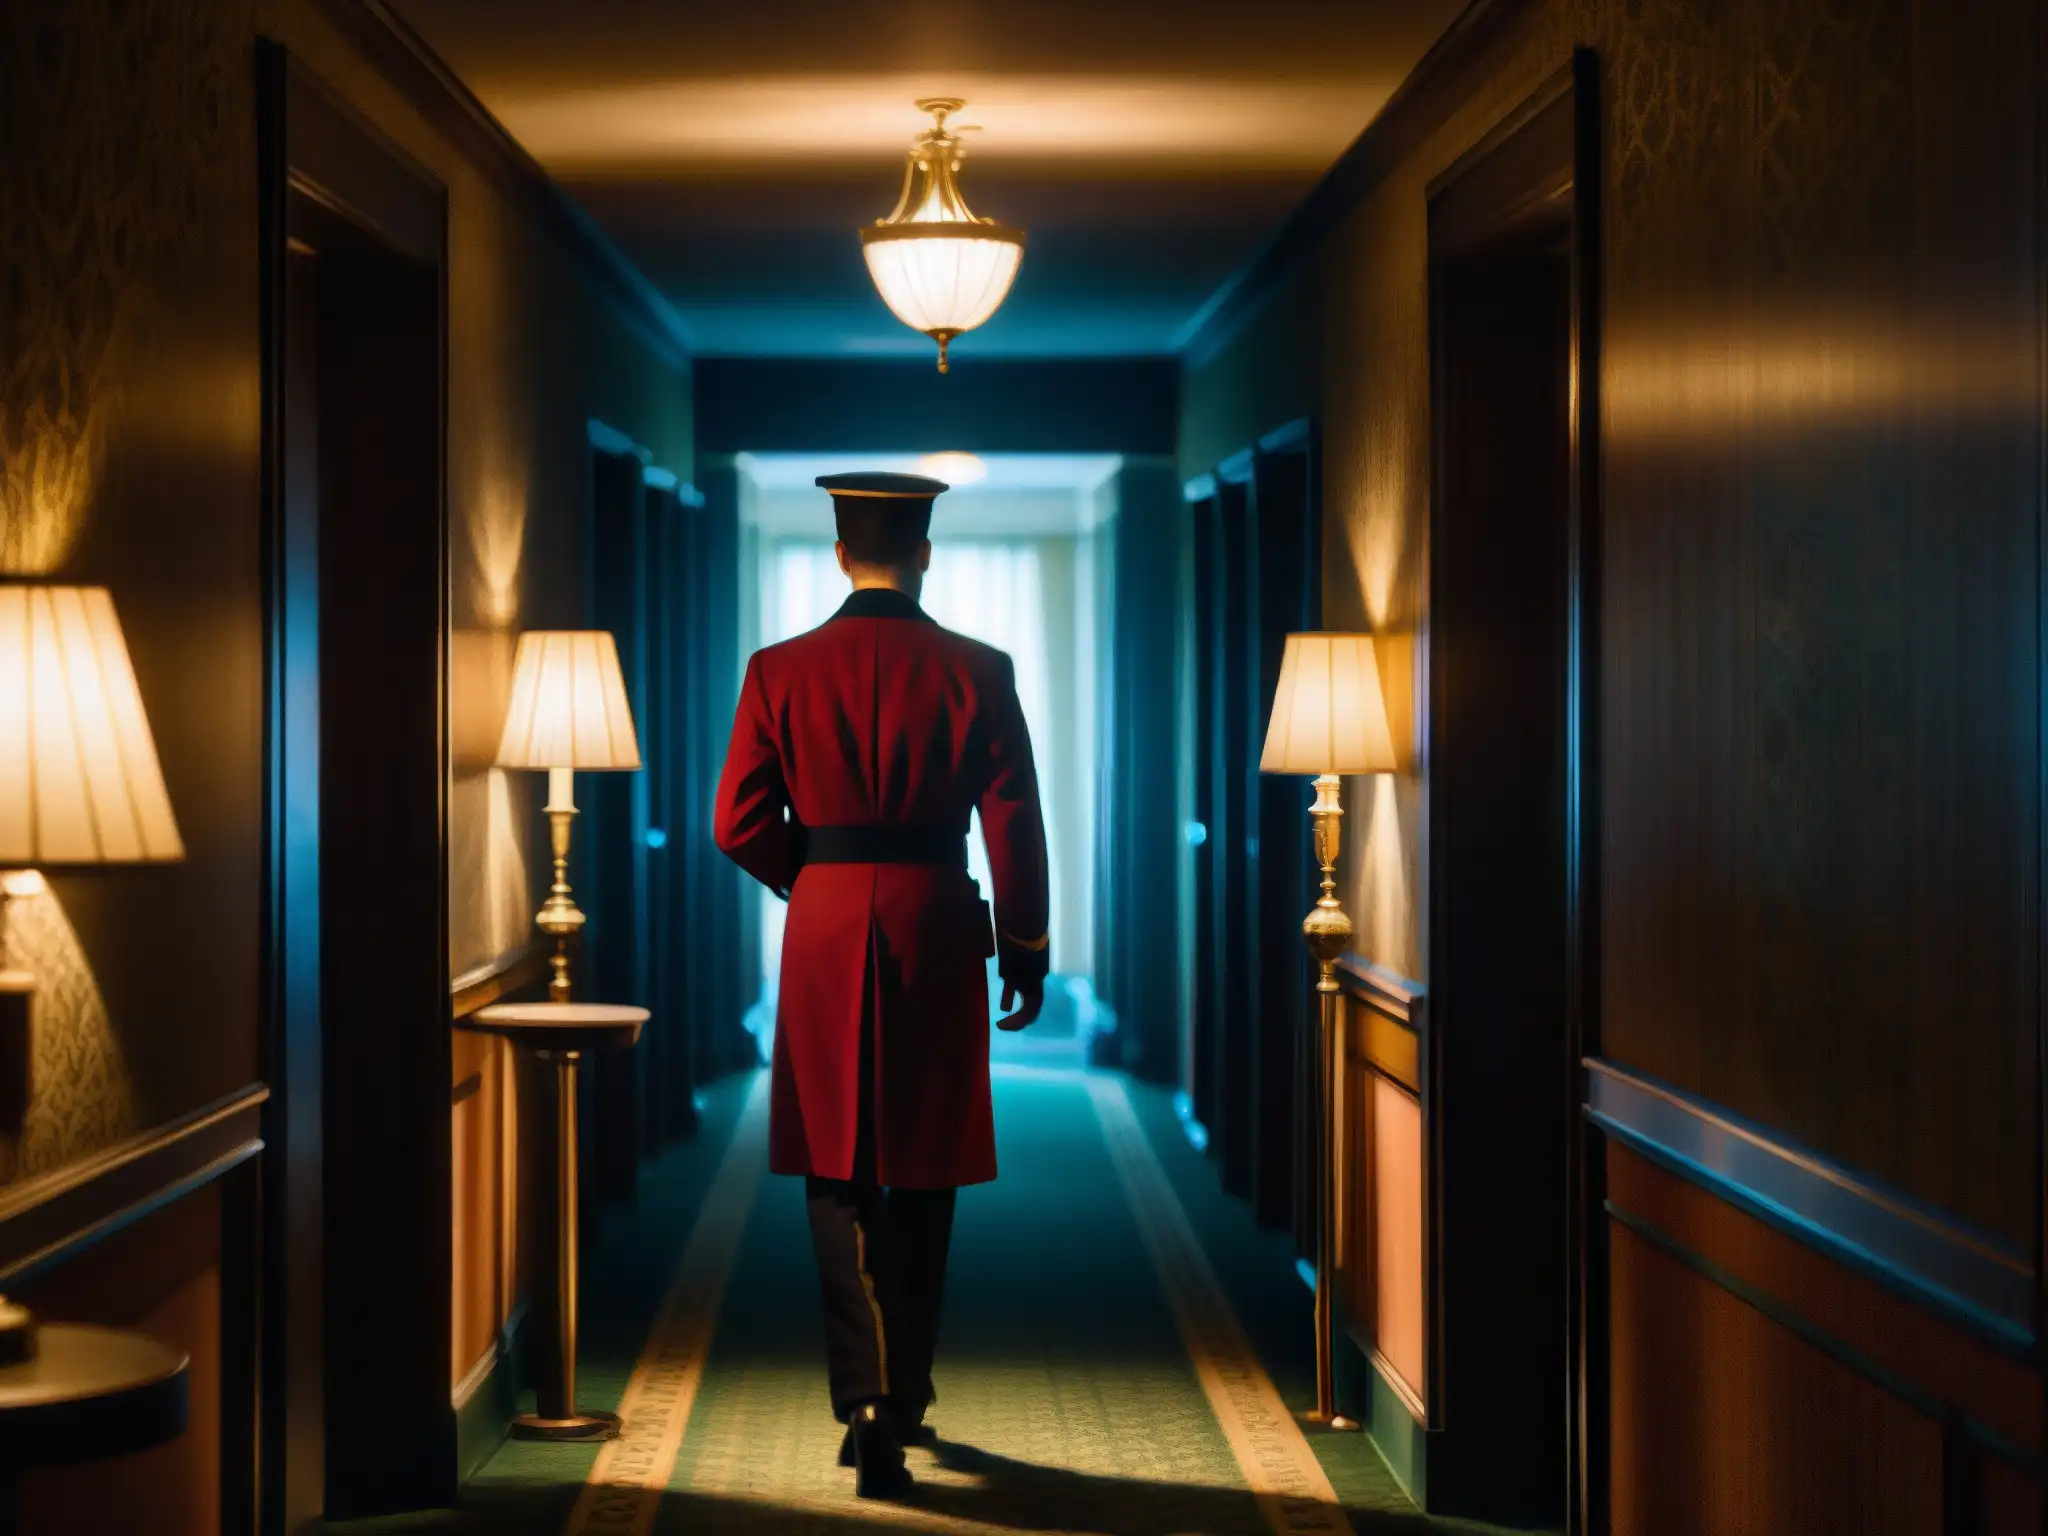 En el Hotel Savoy, un pasillo oscuro revela un ambiente misterioso y fantasmal, con evidencias de leyendas pasadas